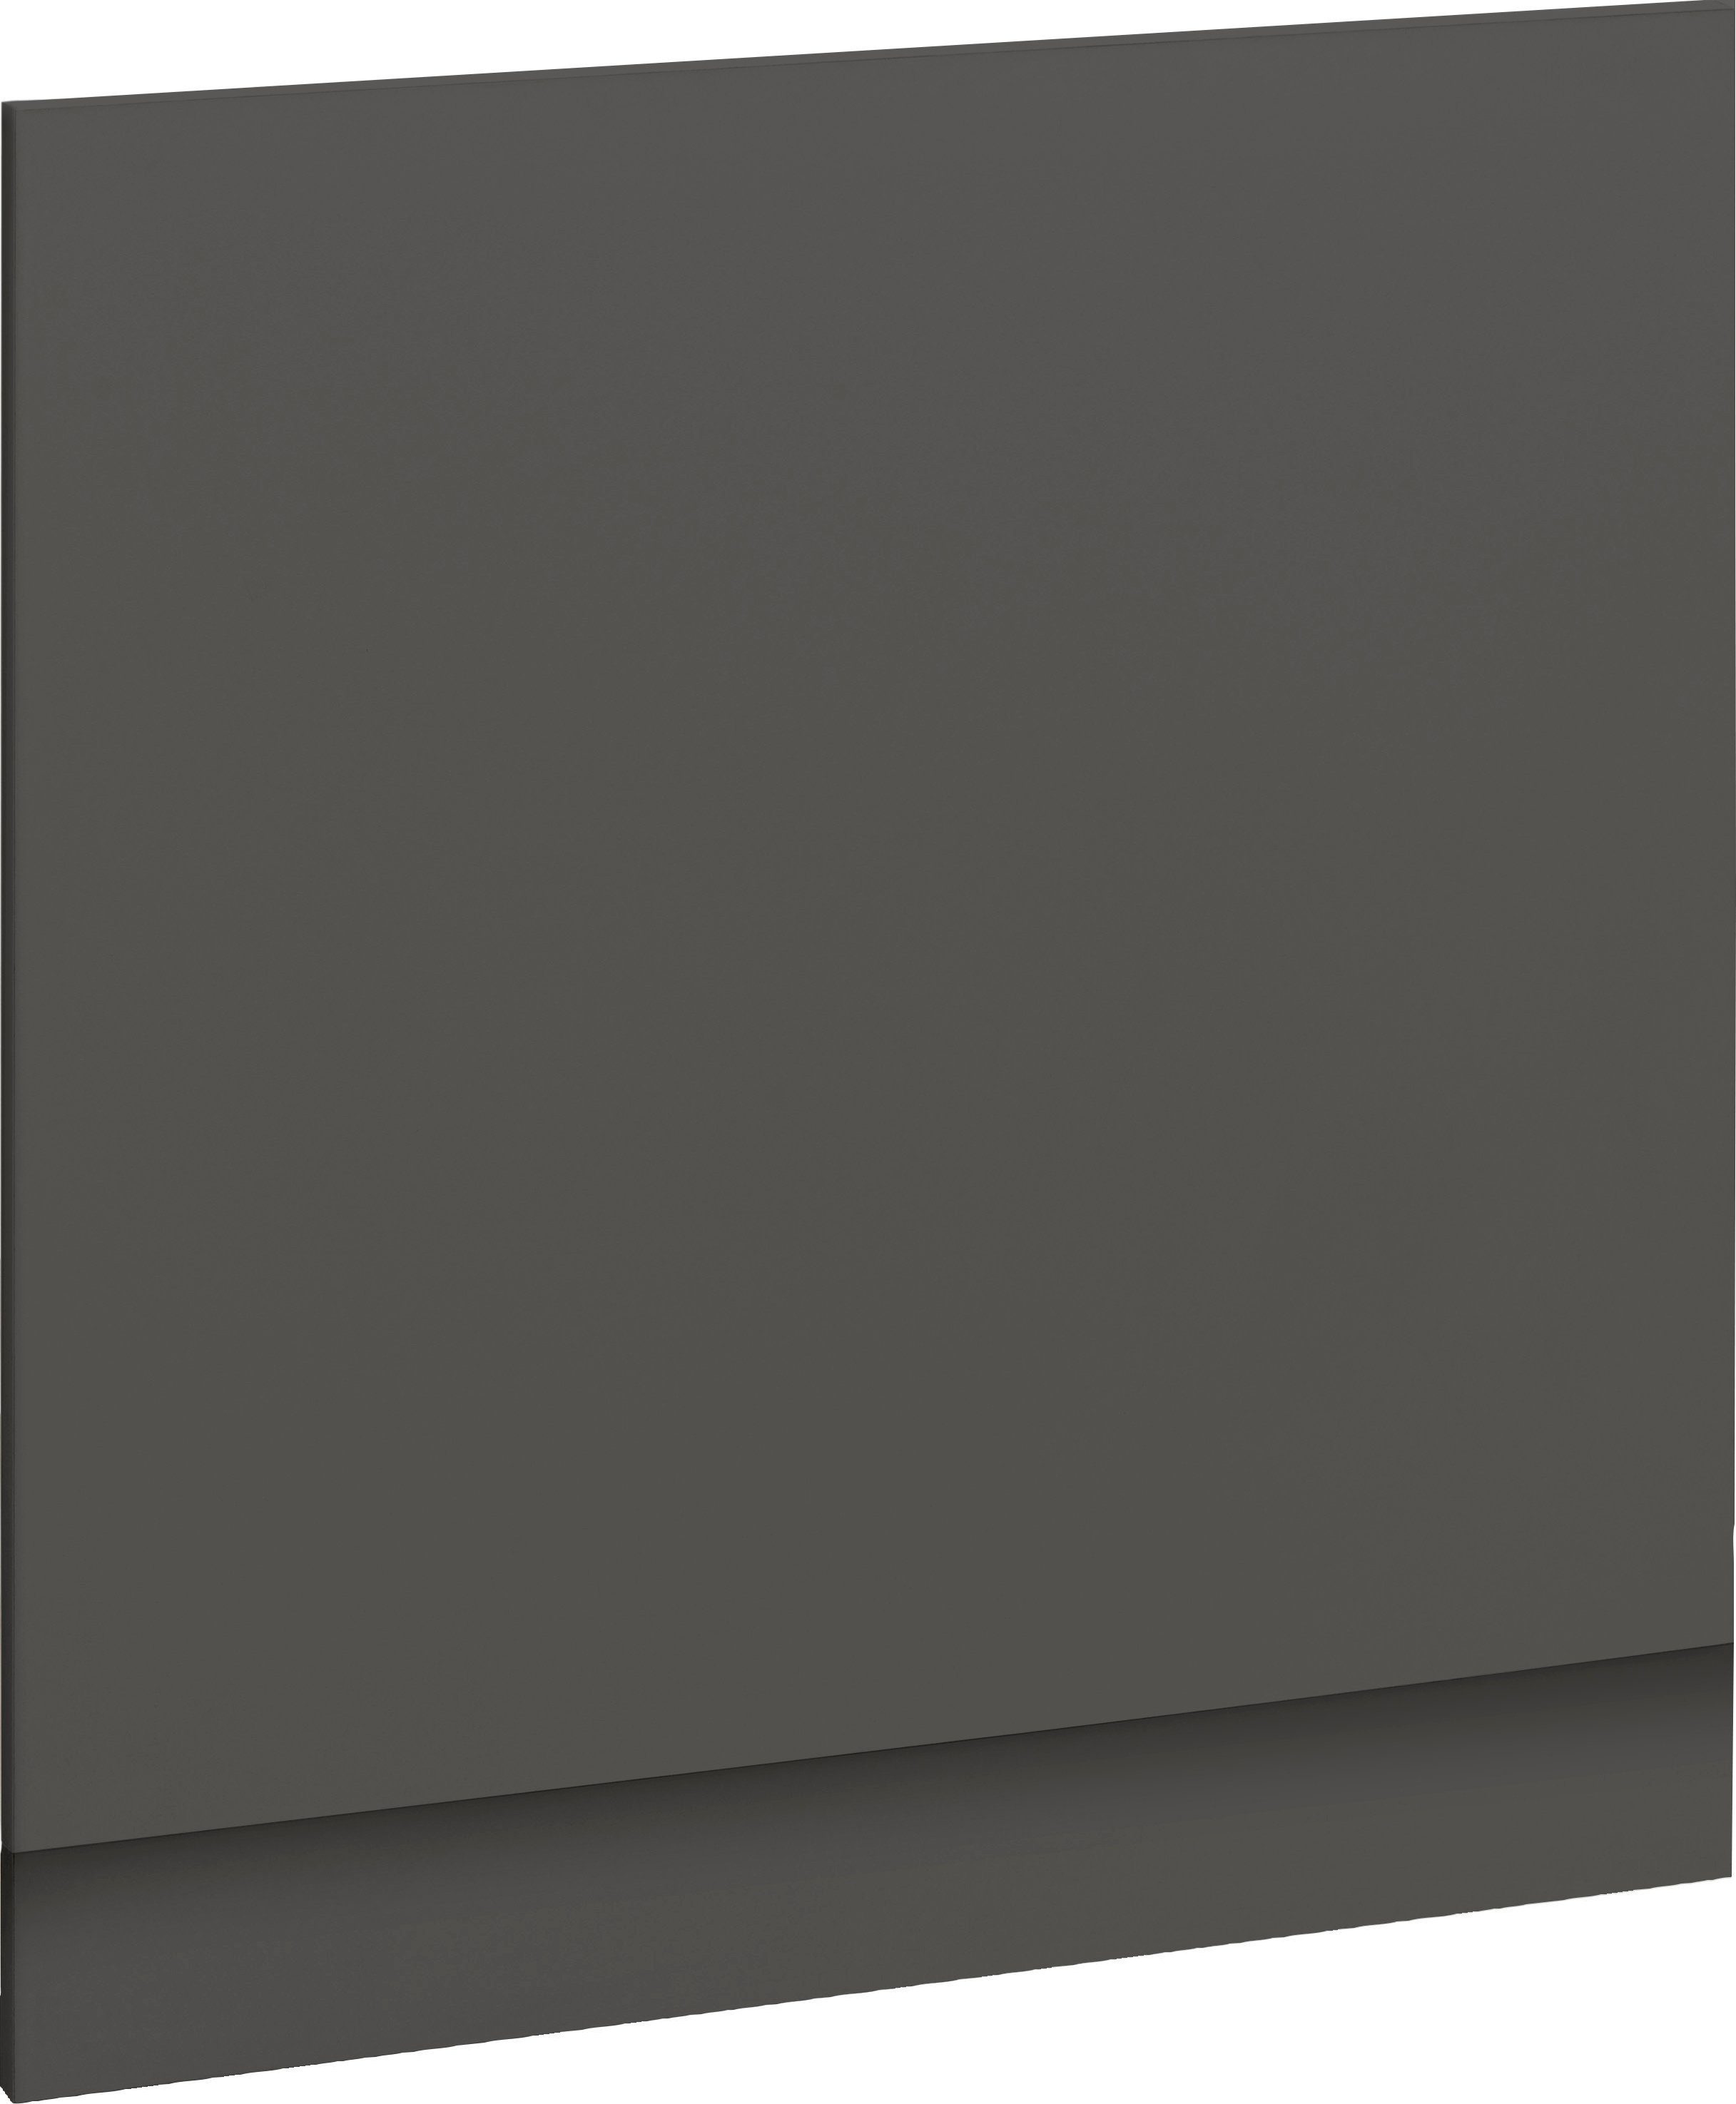 wiho Küchen Frontblende Unna, 60 cm breit, für teilintegrierbaren Geschirrspüler anthrazit